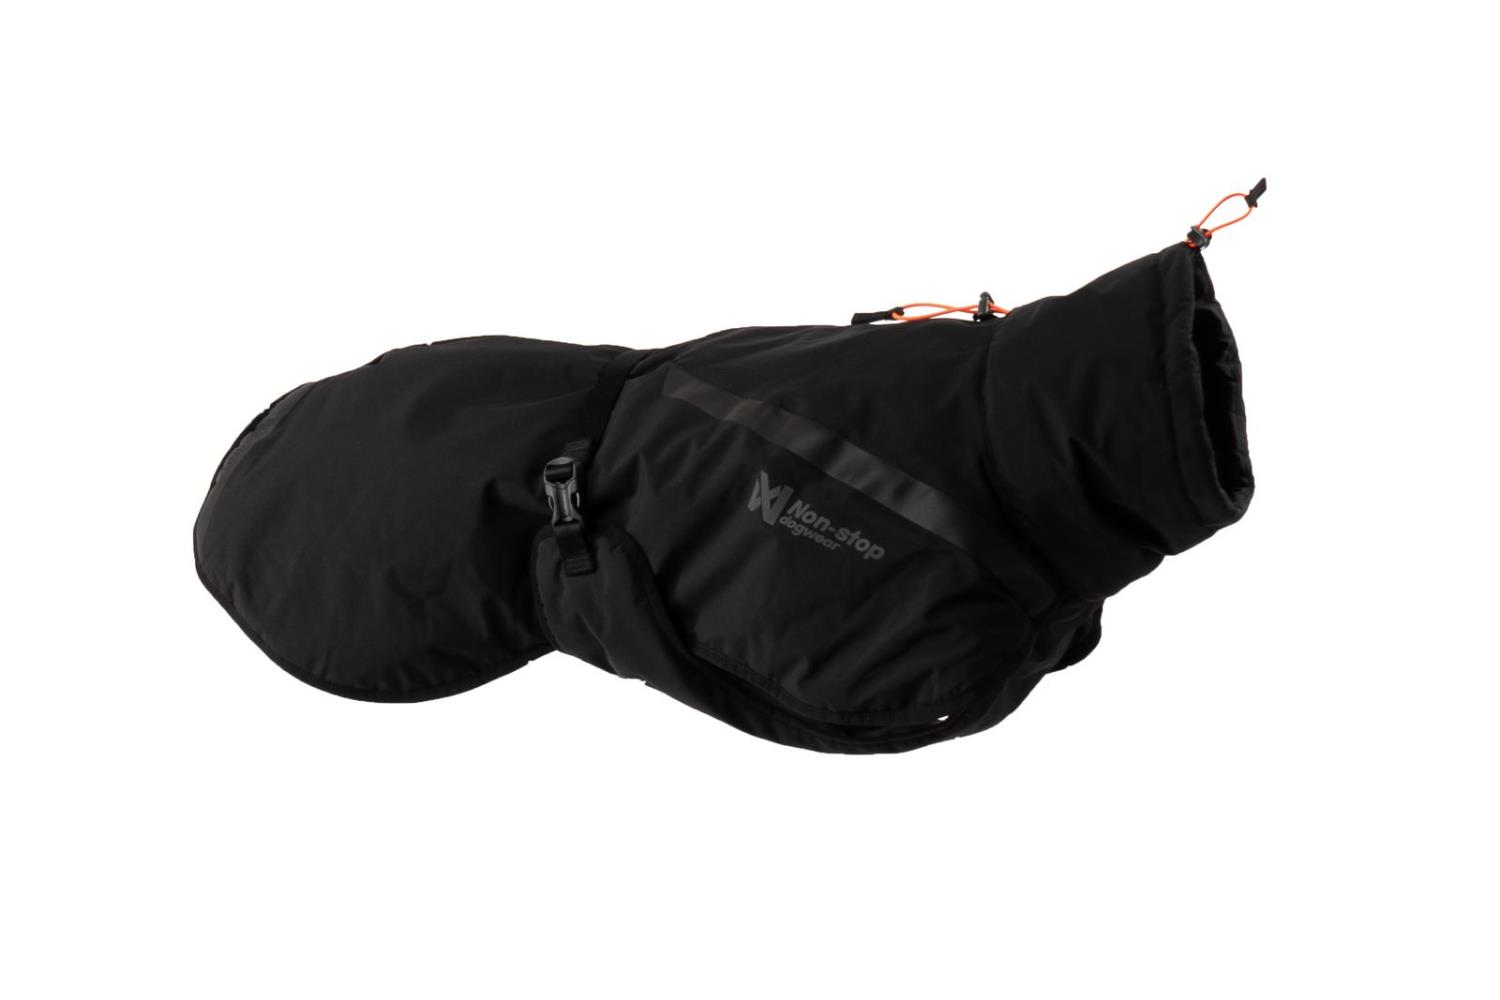 Trekking insulated dog jacket, unisex, black | Flere størrelser